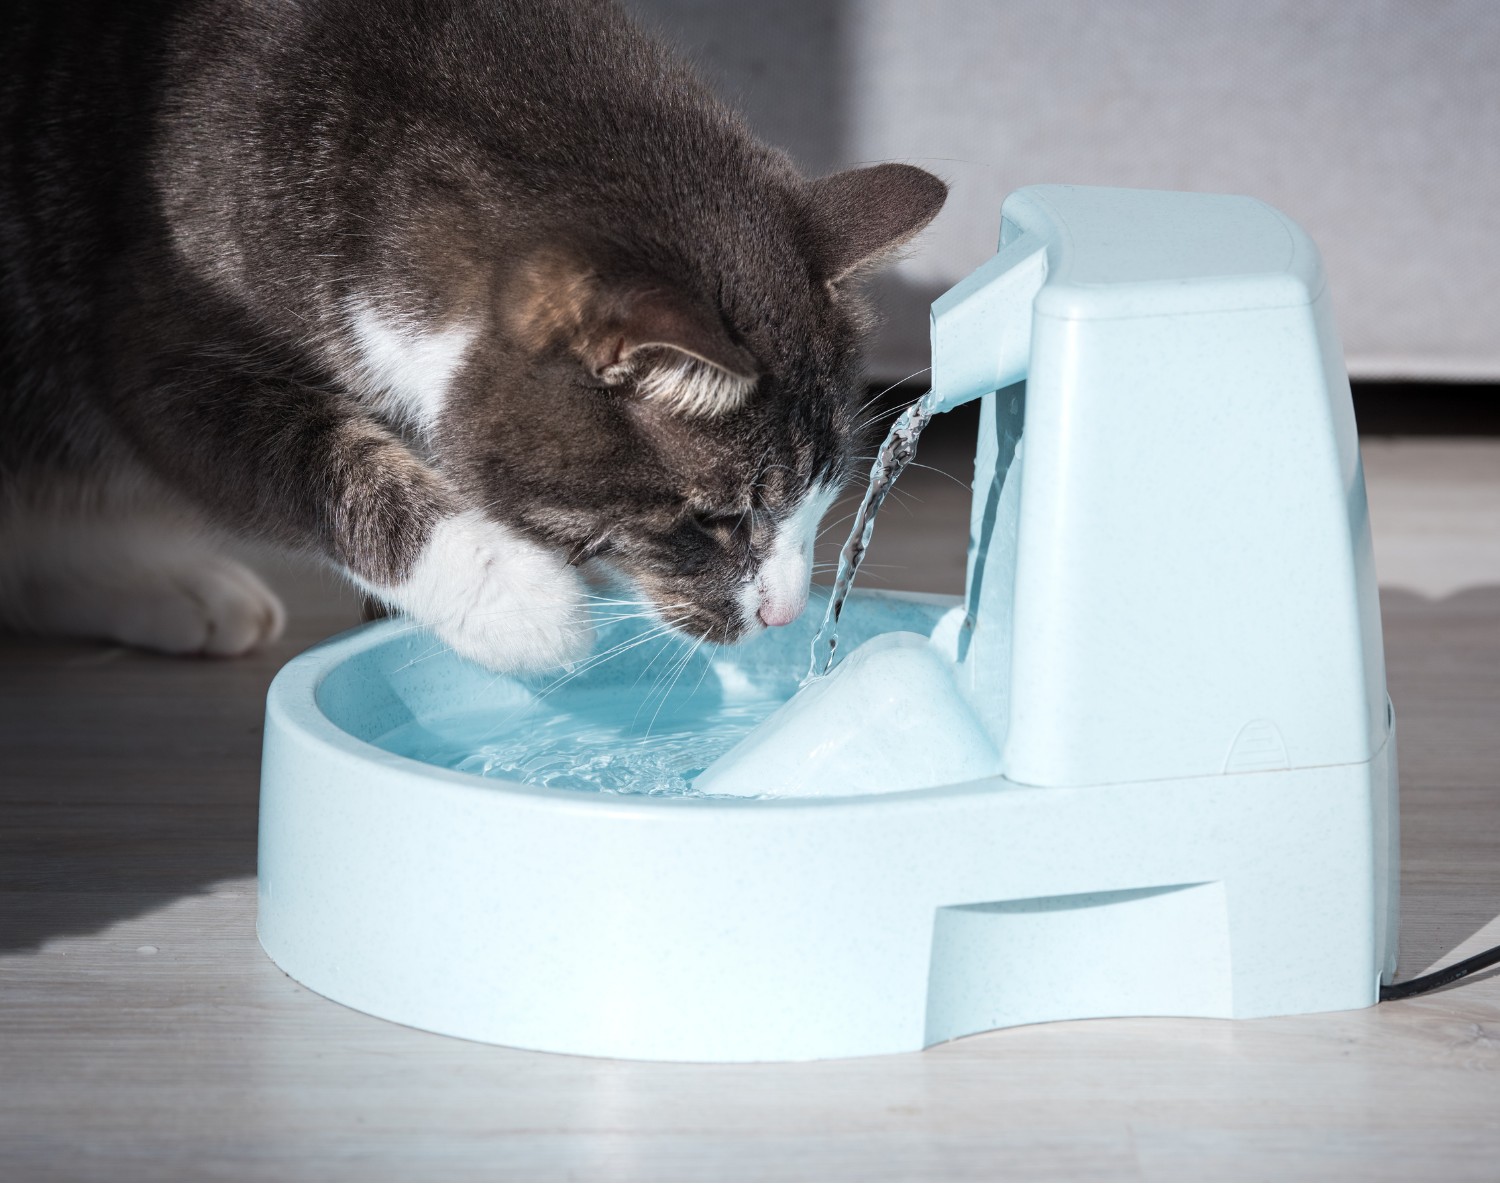 Os gatos costumam adorar água fresca (Foto: Canva/Creative Commons)